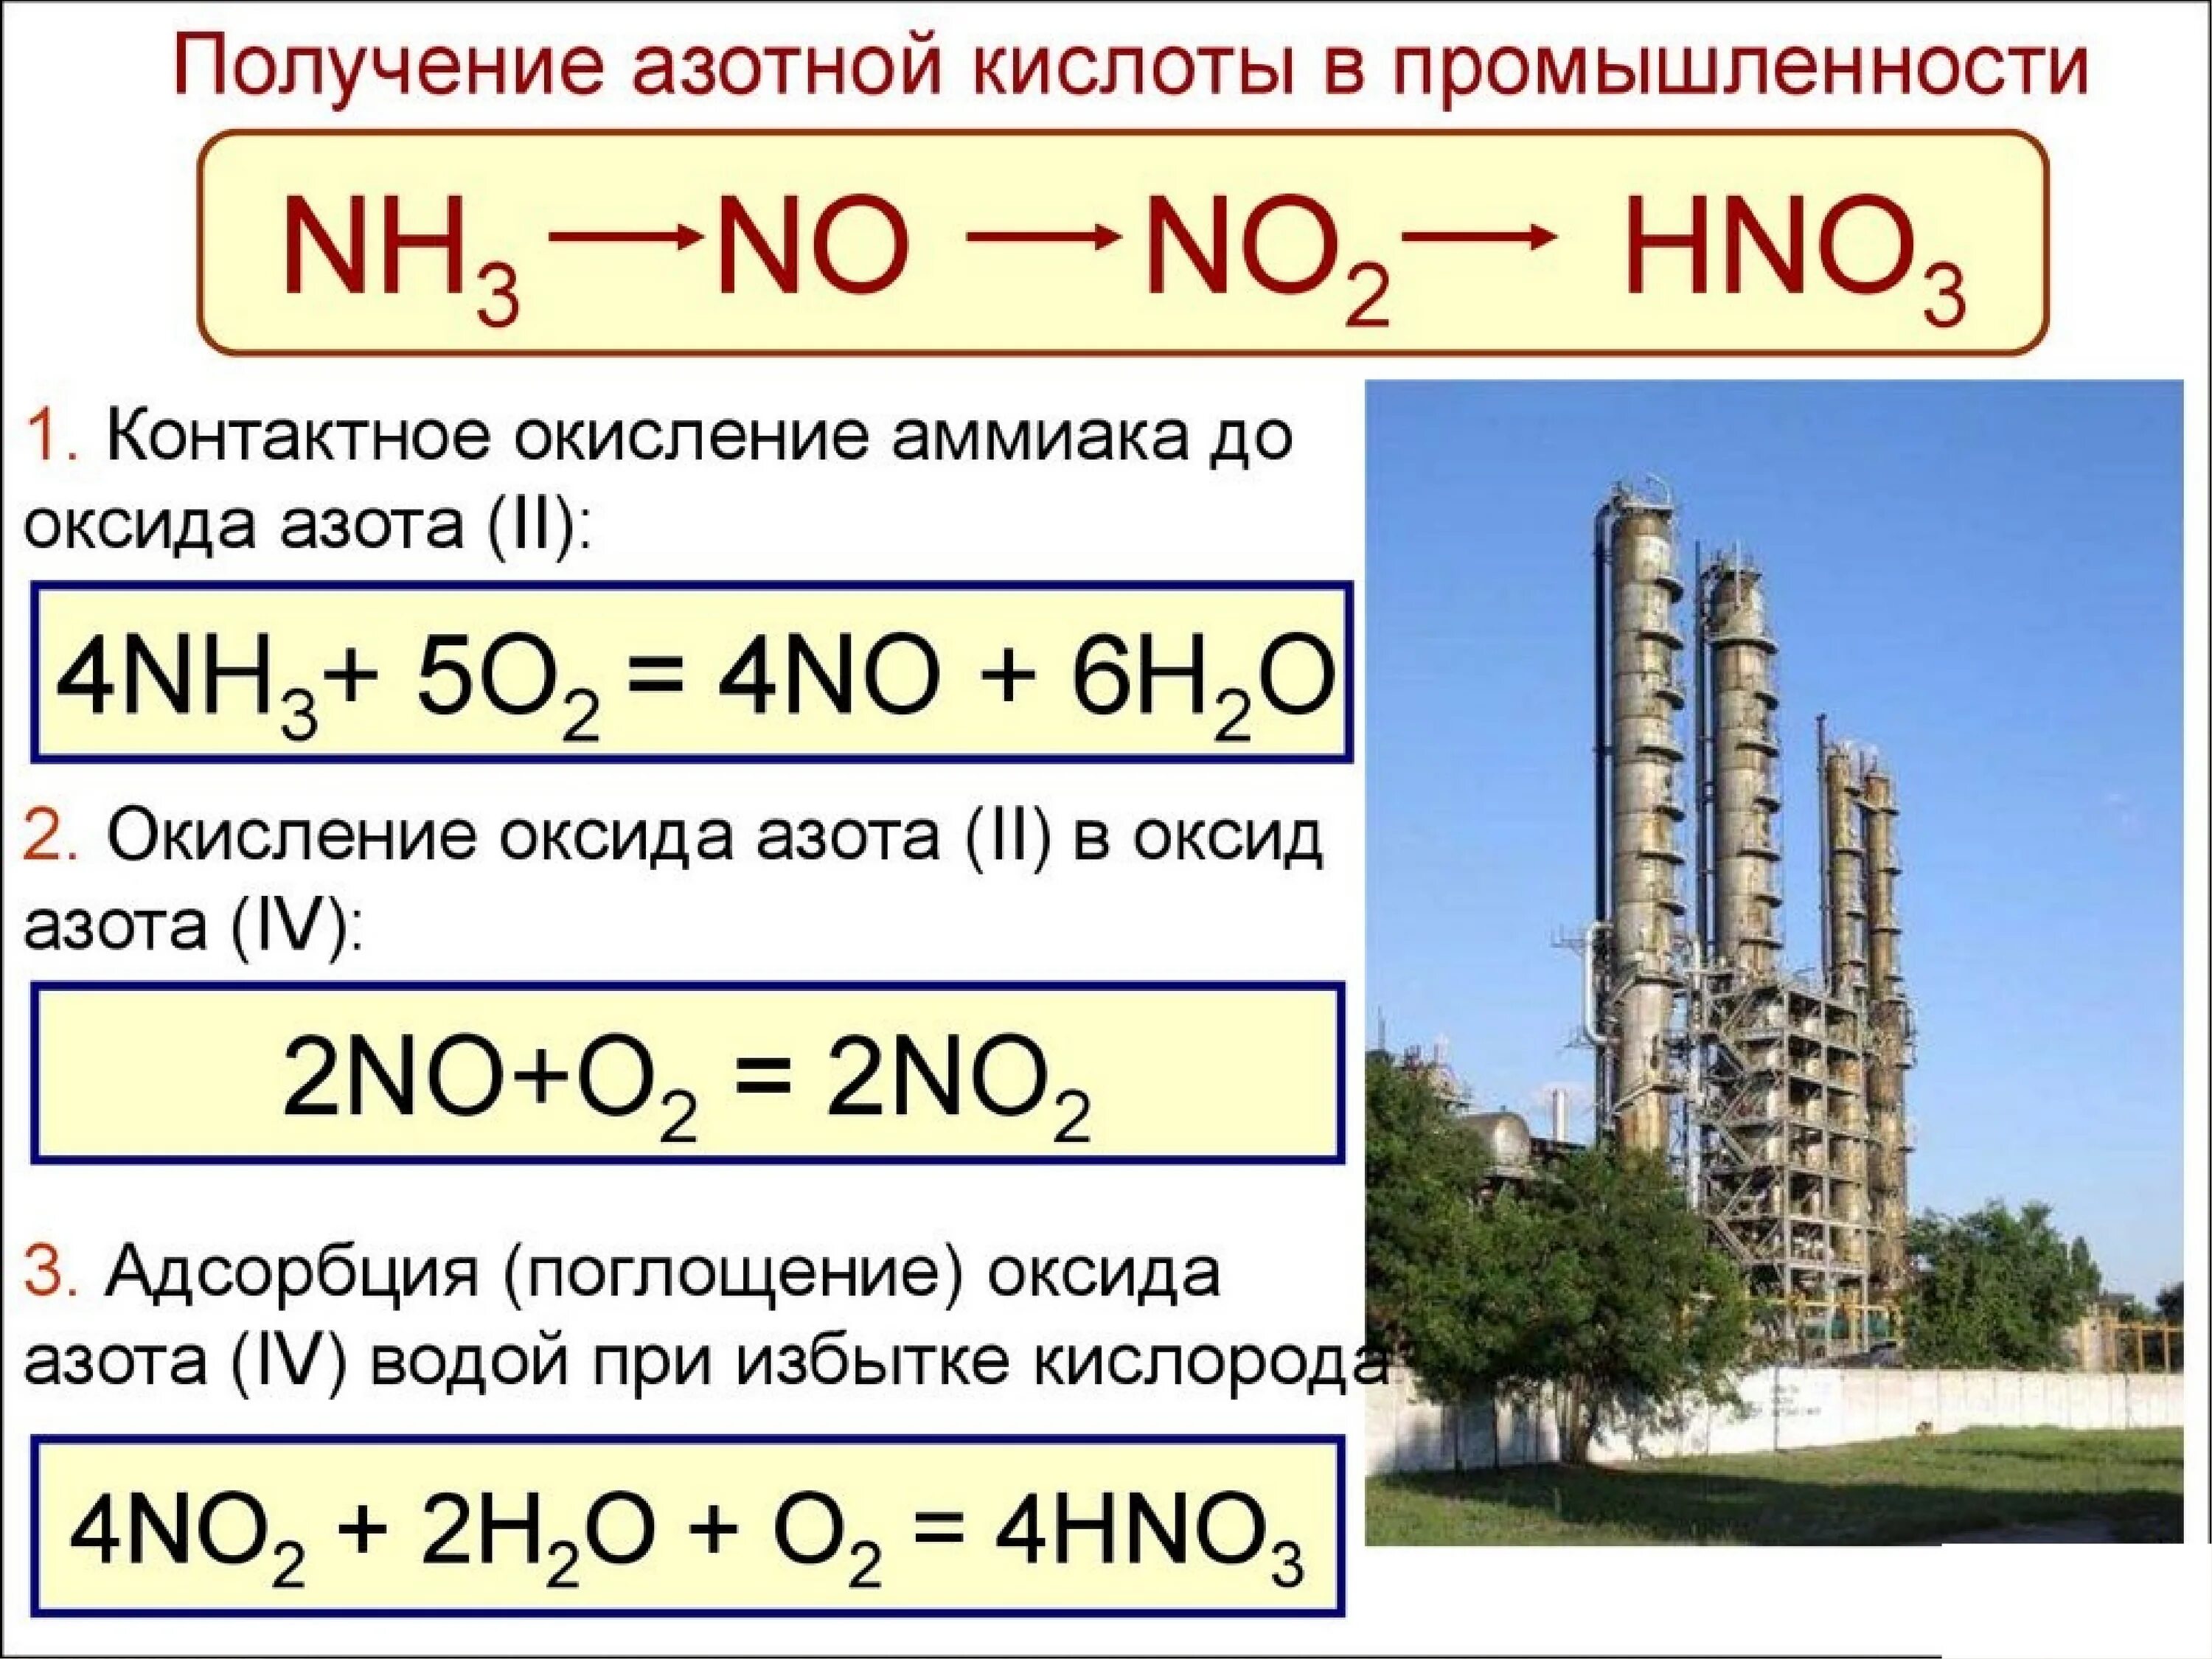 Получение азотной кислоты из аммиака. Как из аммиака получить азотную кислоту. Как из аммиака получить оксид азота 2. Получение азотной кислоты из no2. Nh3 hno3 продукты реакции